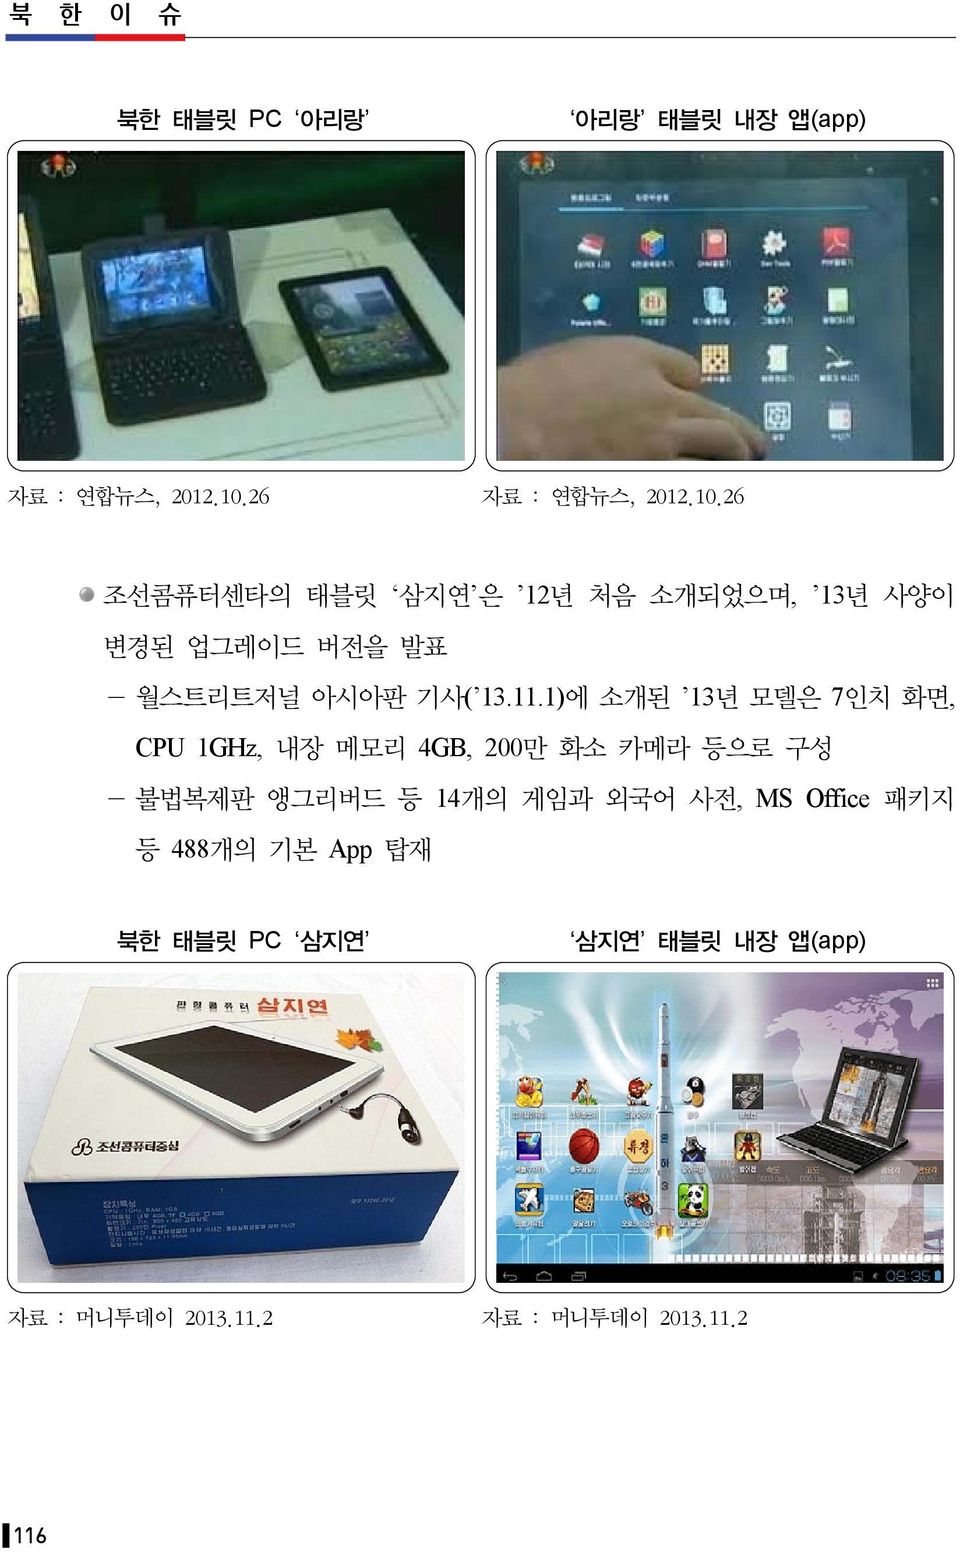 26 조선콤퓨터센타의 태블릿 삼지연 은 12년 처음 소개되었으며, 13년 사양이 변경된 업그레이드 버전을 발표 - 월스트리트저널 아시아판 기사( 13.11.